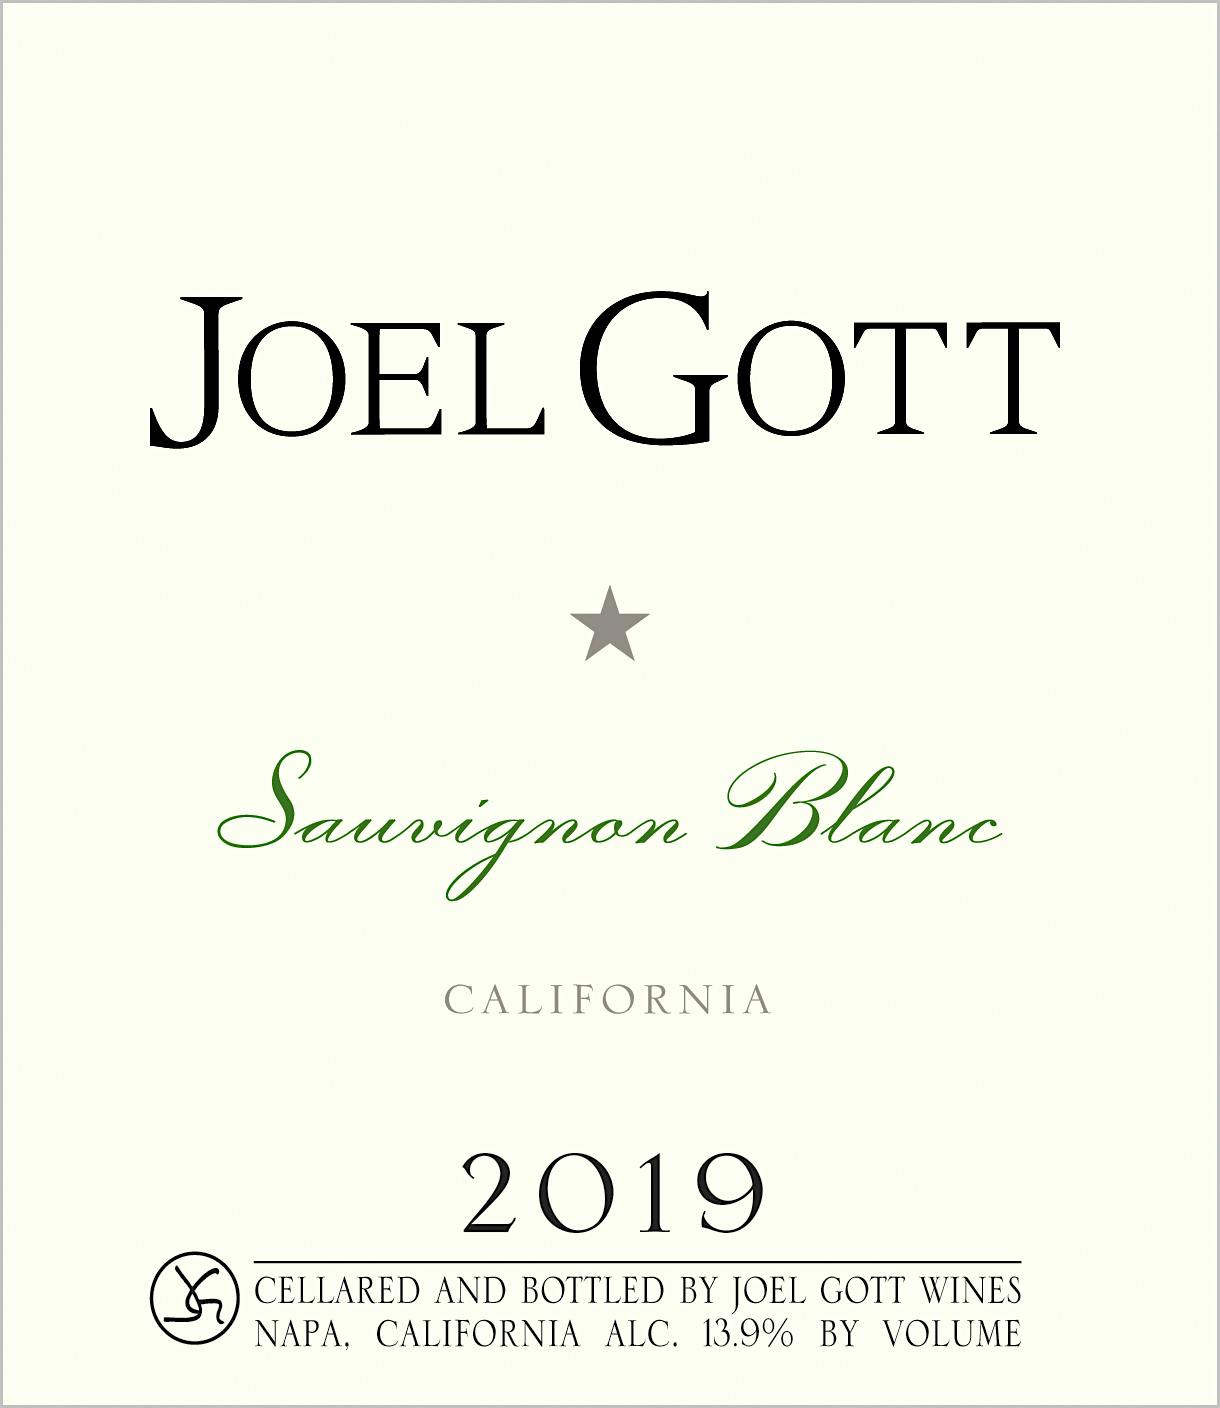 Label for Joel Gott